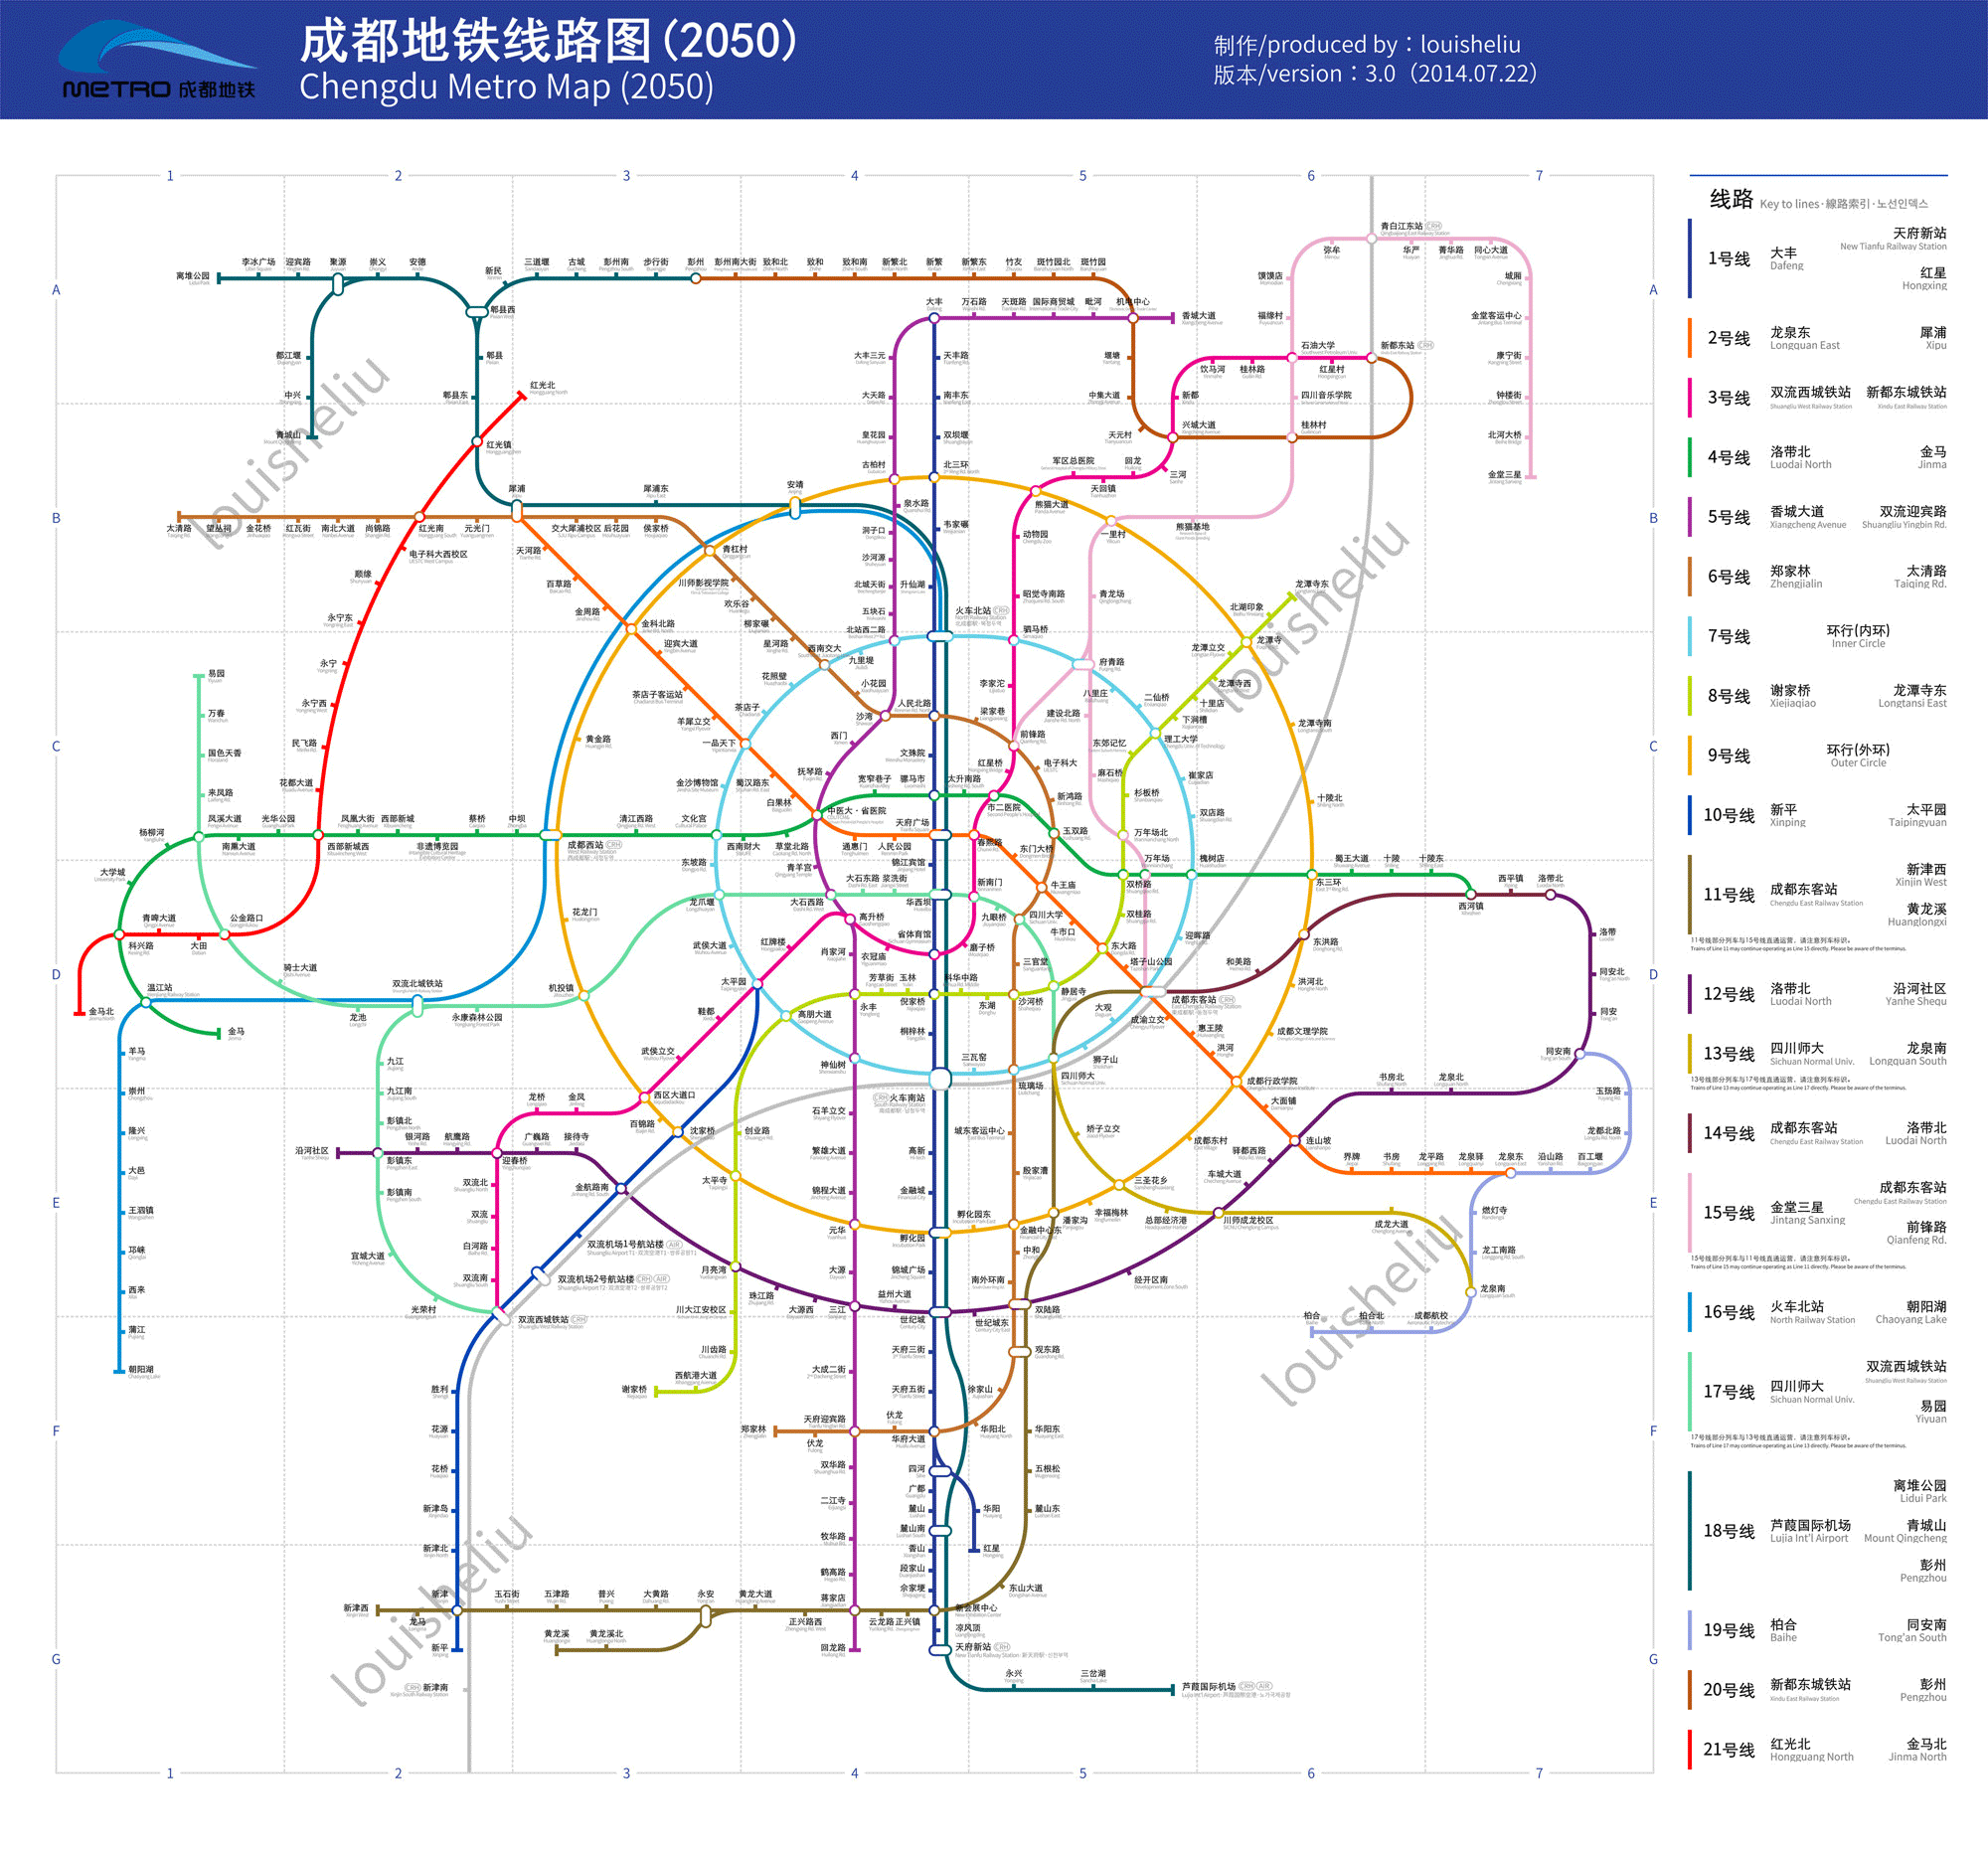 成都地铁远景推荐线网由46条线路组成,包含23条普线,16条快线,3条既